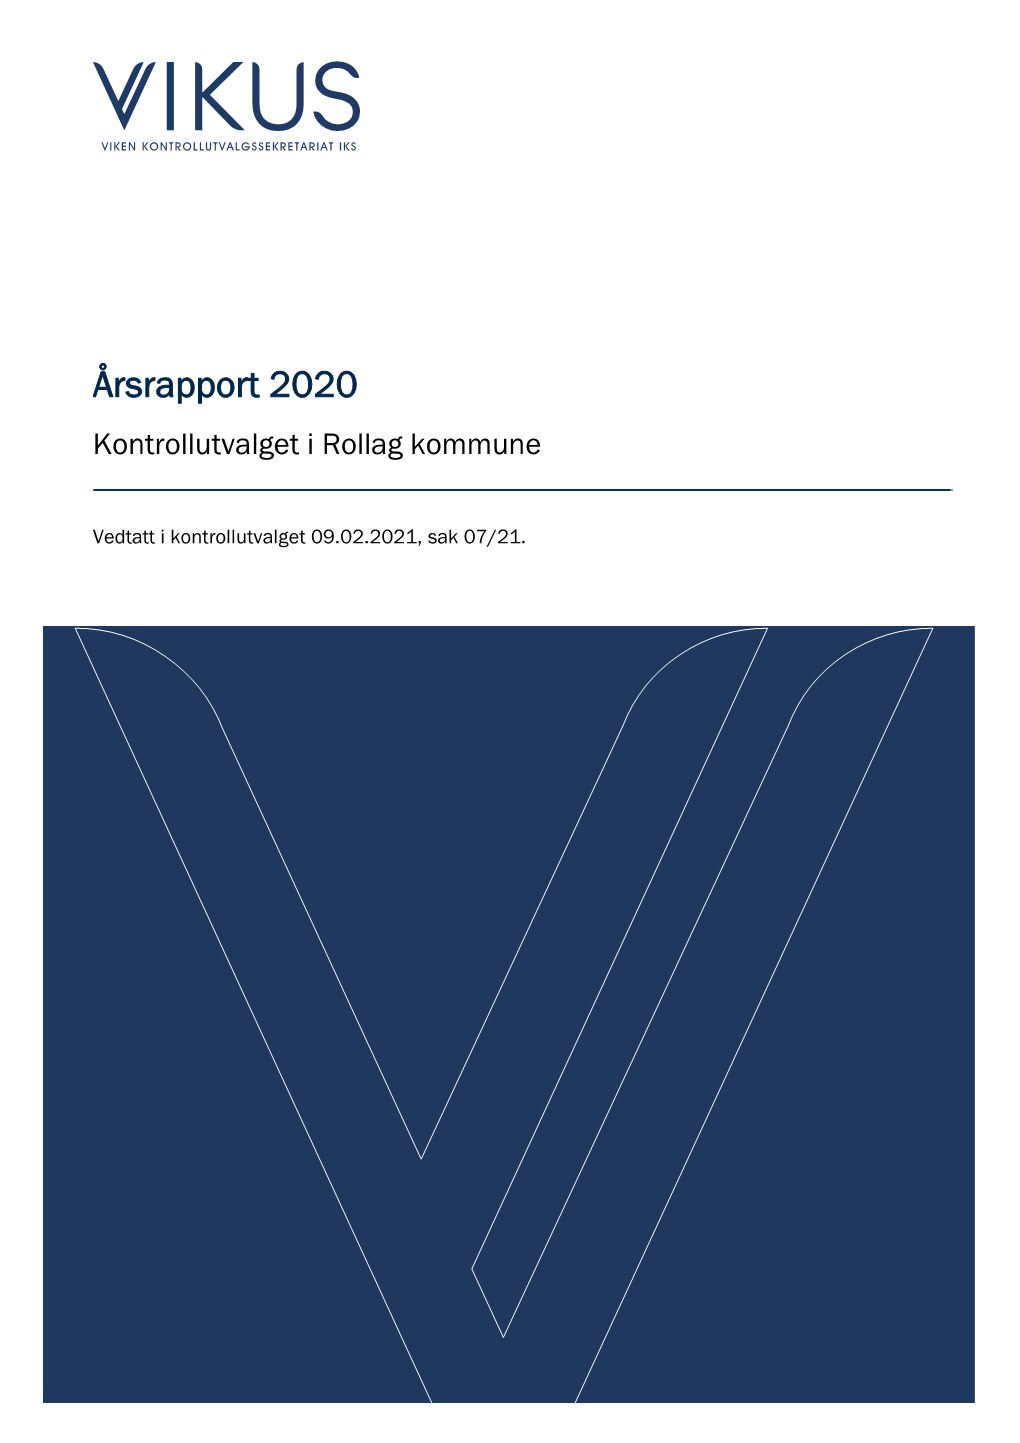 Kontrollutvalgets Årsrapport for 2020. Rollag Kommune